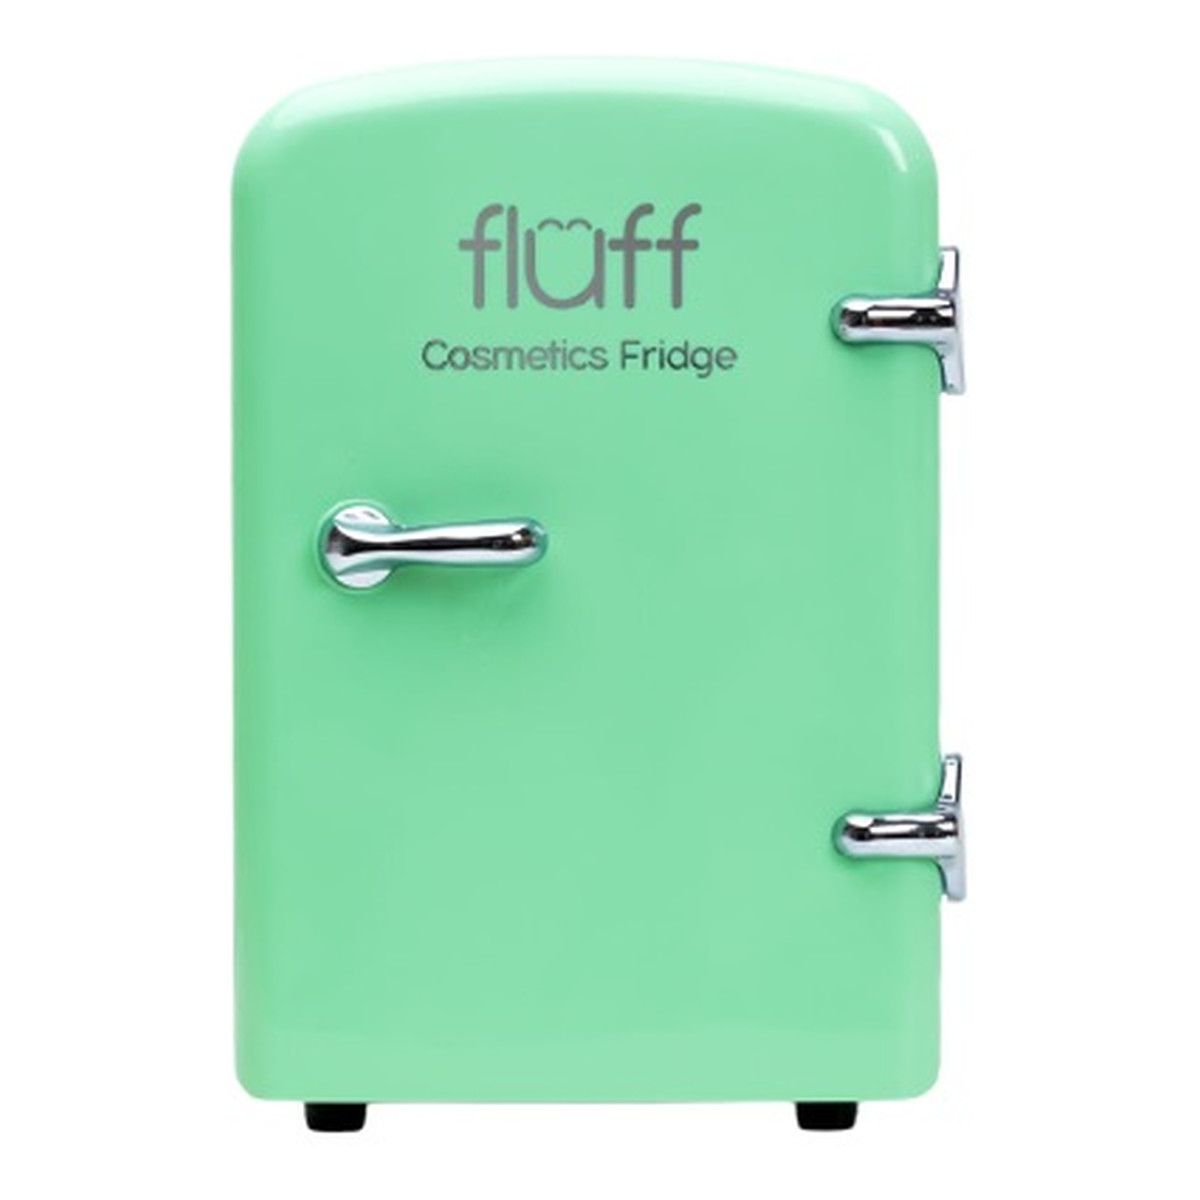 Fluff Cosmetics fridge lodówka kosmetyczna zielona